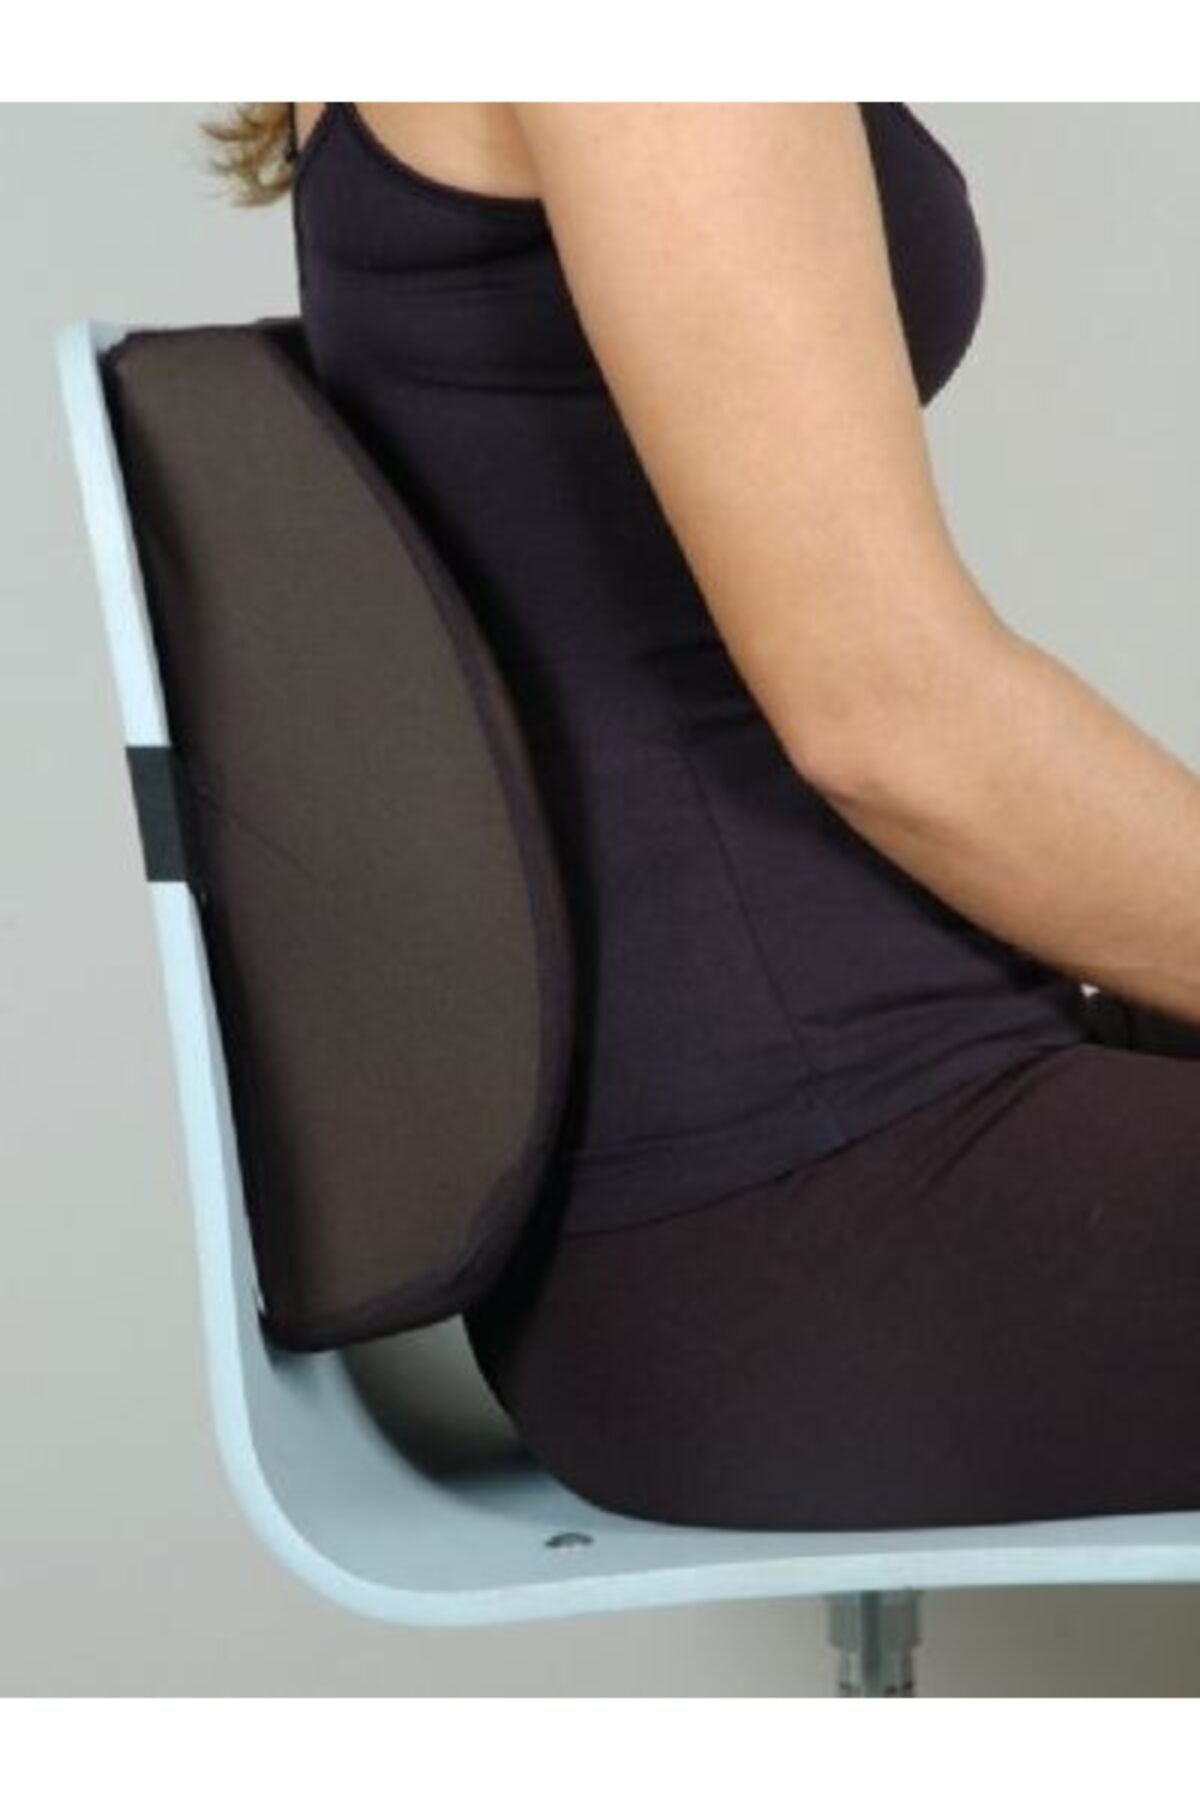 Ankaflex Anatomik Ofis Koltuk Bel Yastığı Minderi Sandalye Yastığı Minderi